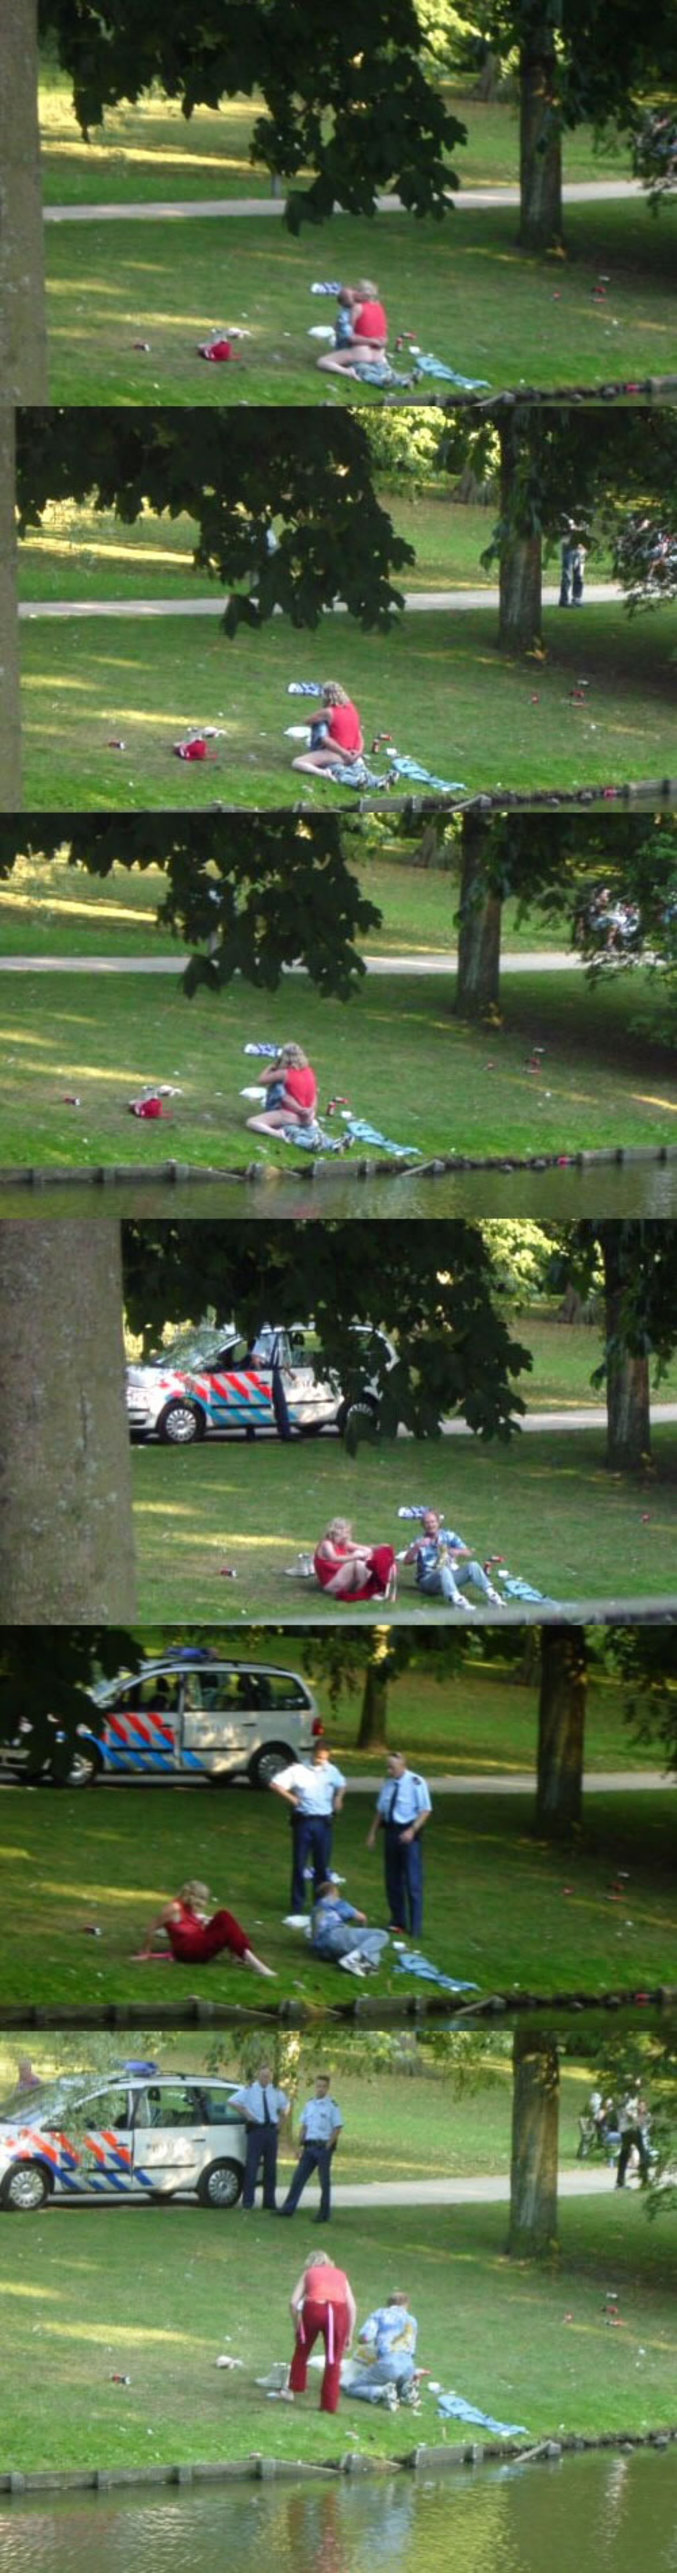 Un couple exhibitionniste fait l'amour dans un parc public puis se fait arrêter.